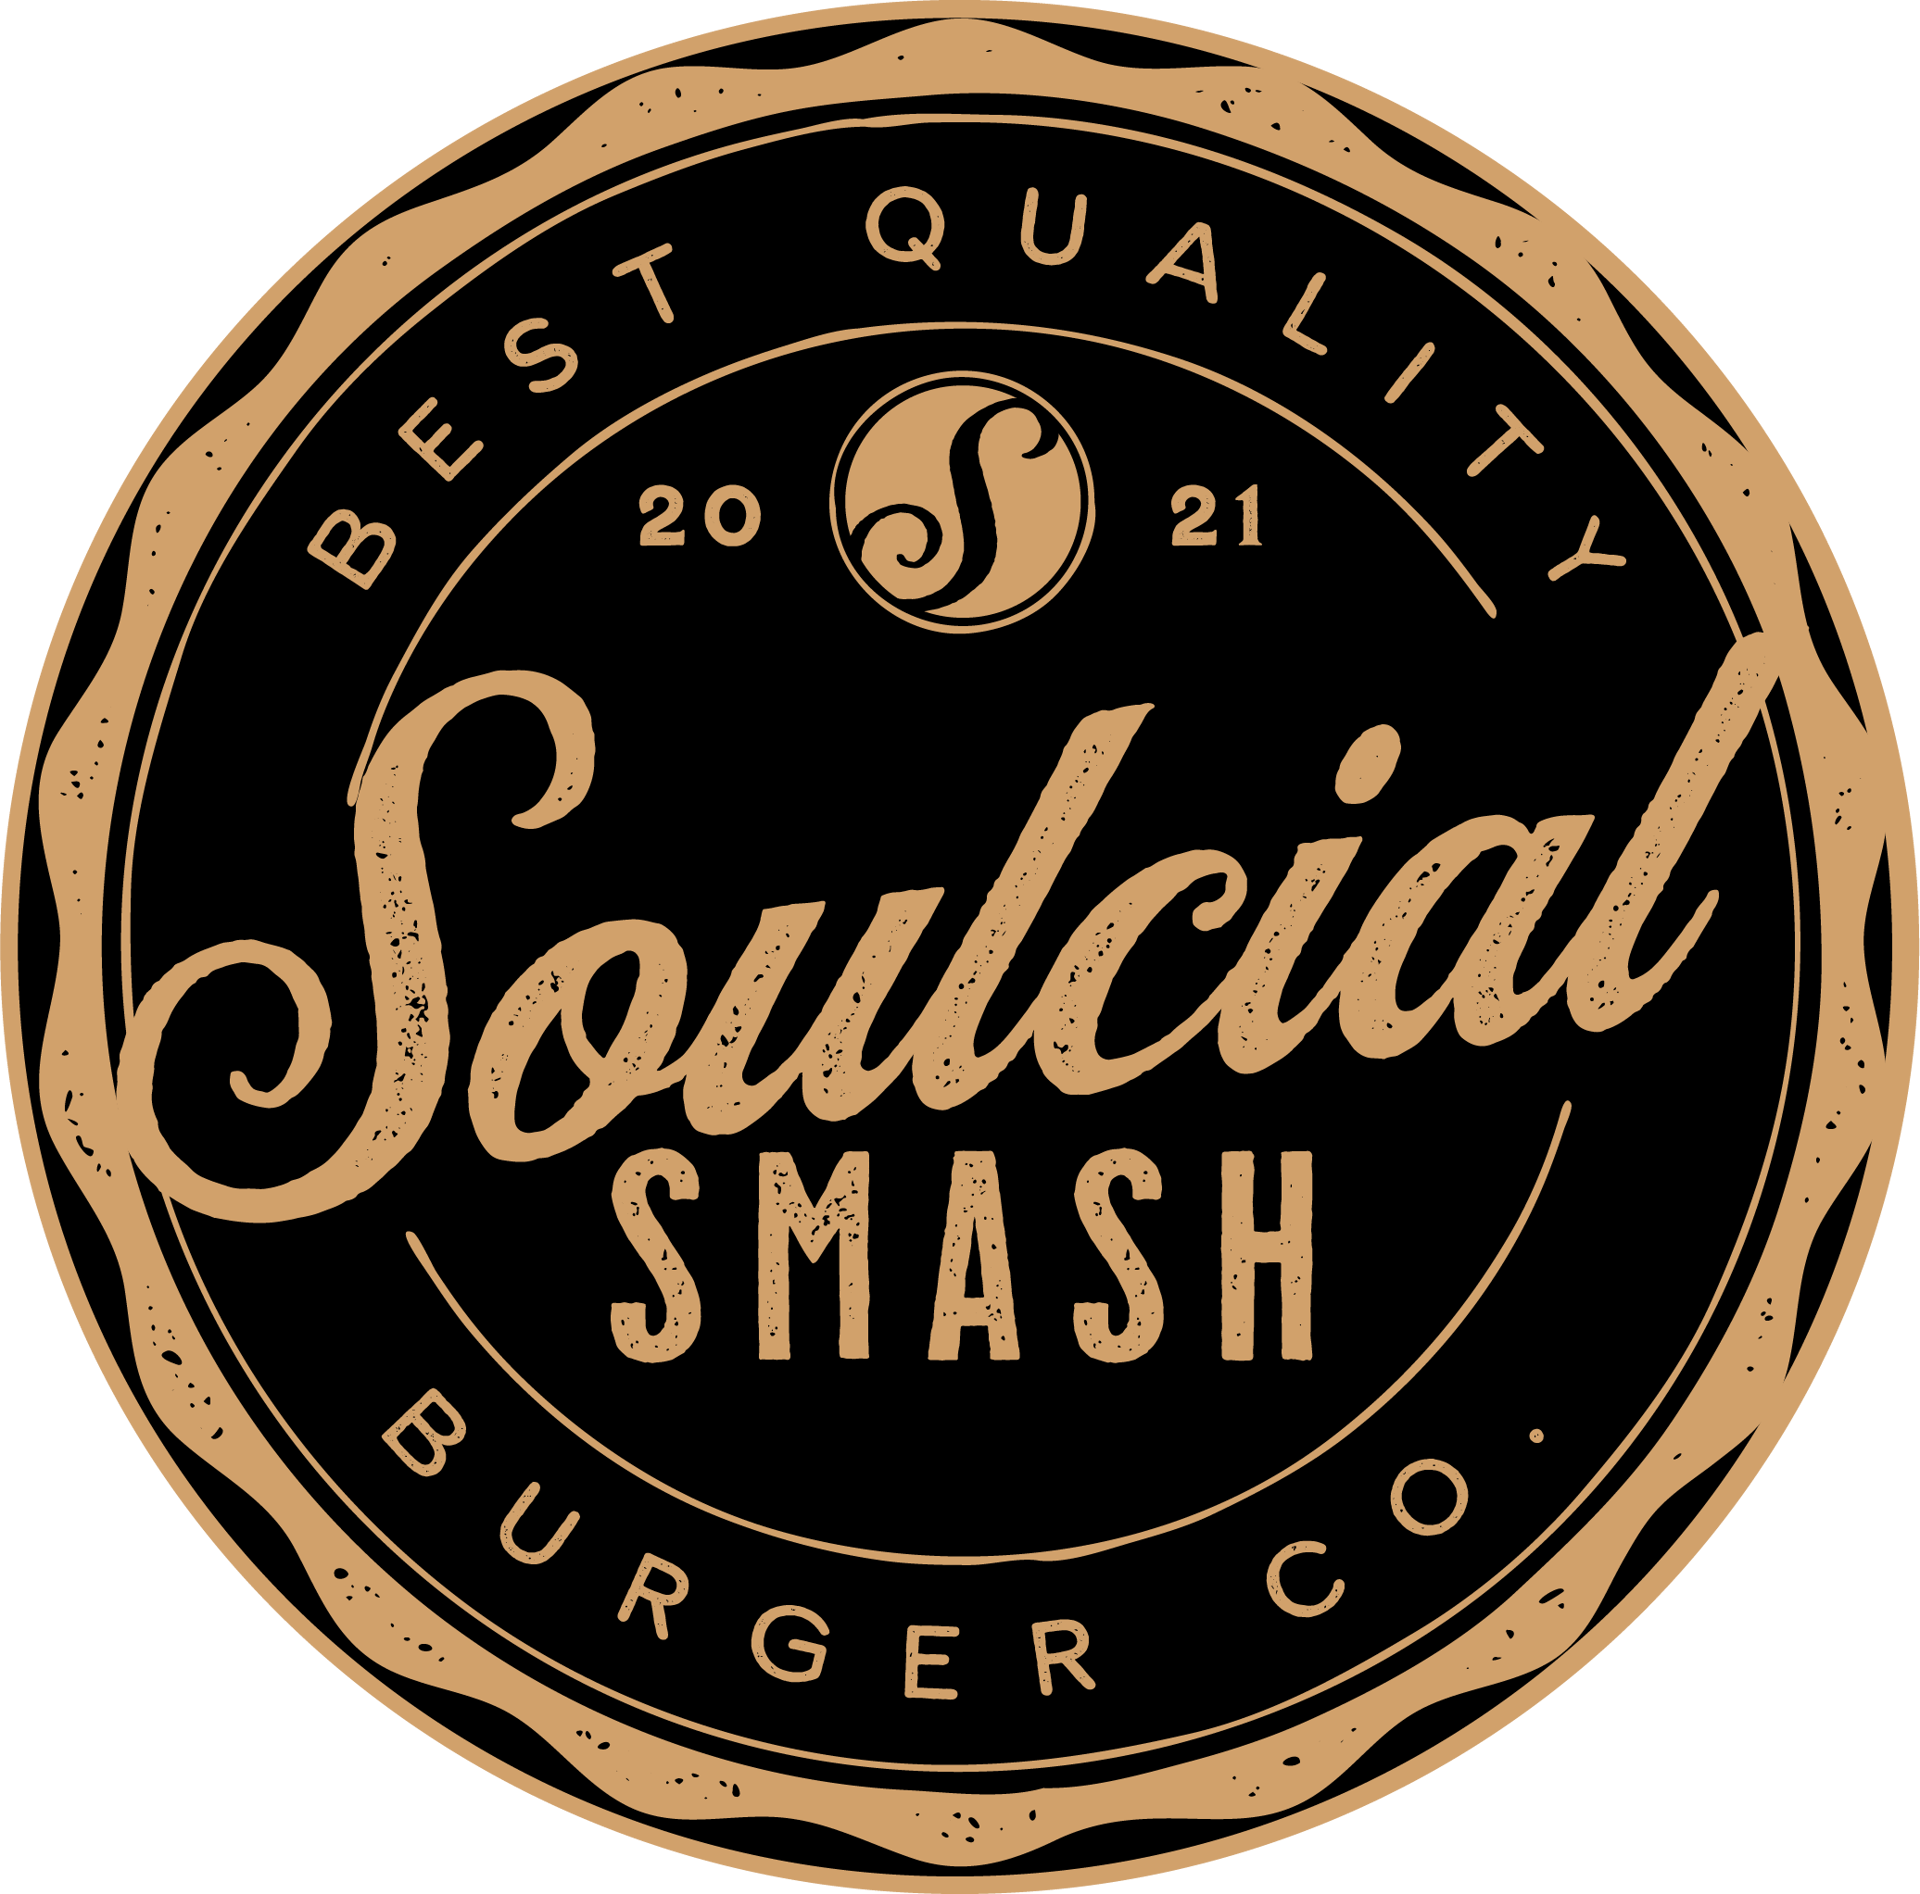 Soulcial Smash Burger